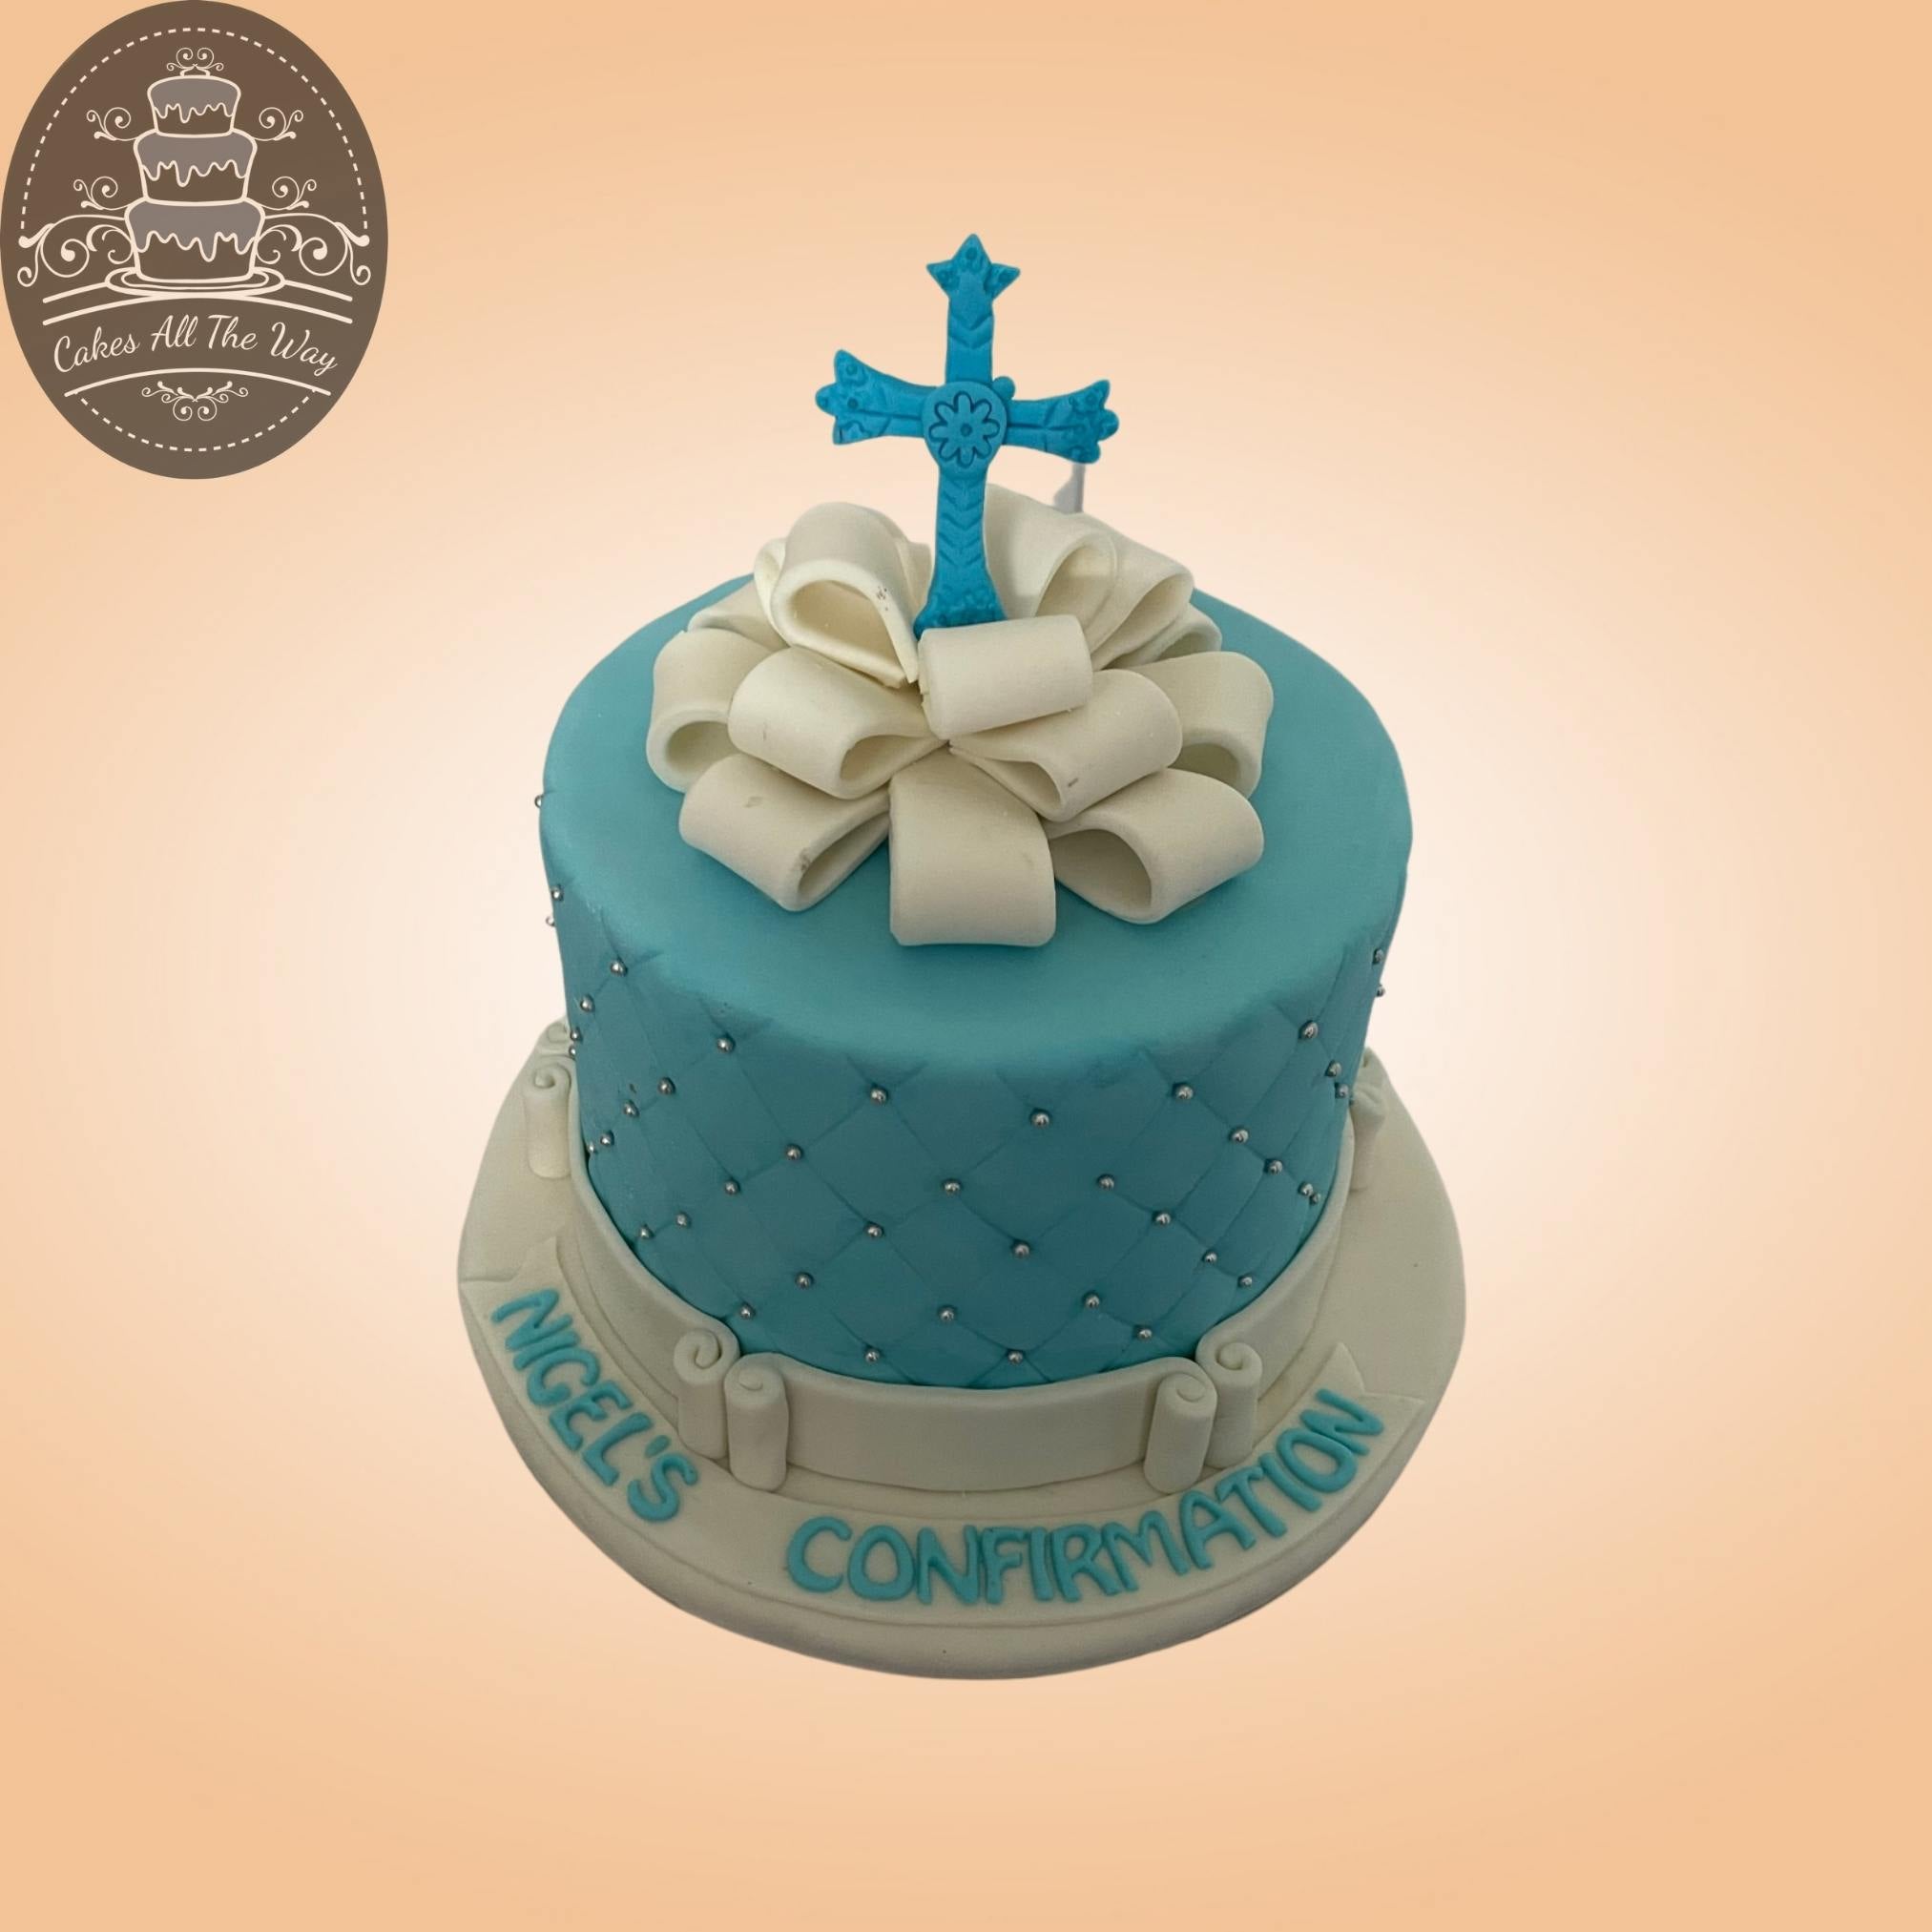 Holy Communion & Confirmation Cakes Malta | Elia Online Shop